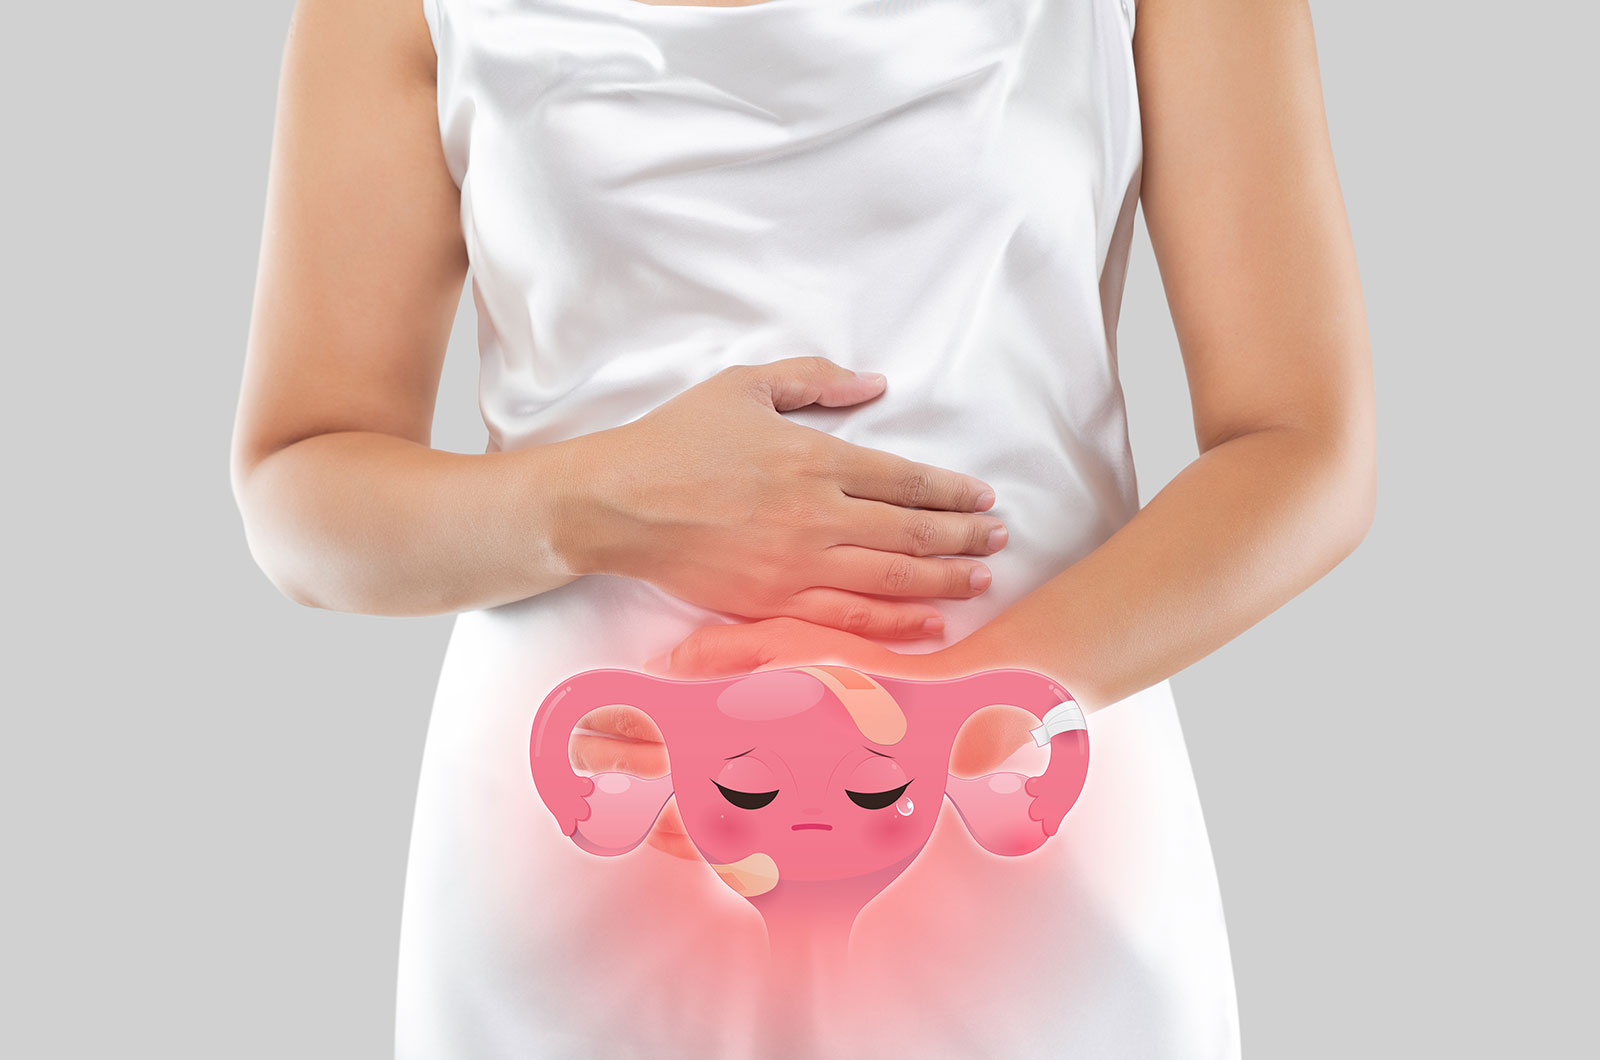 rosa farbige Illustration einer Gebärmutter auf dem Unterleib eines Mädchens 